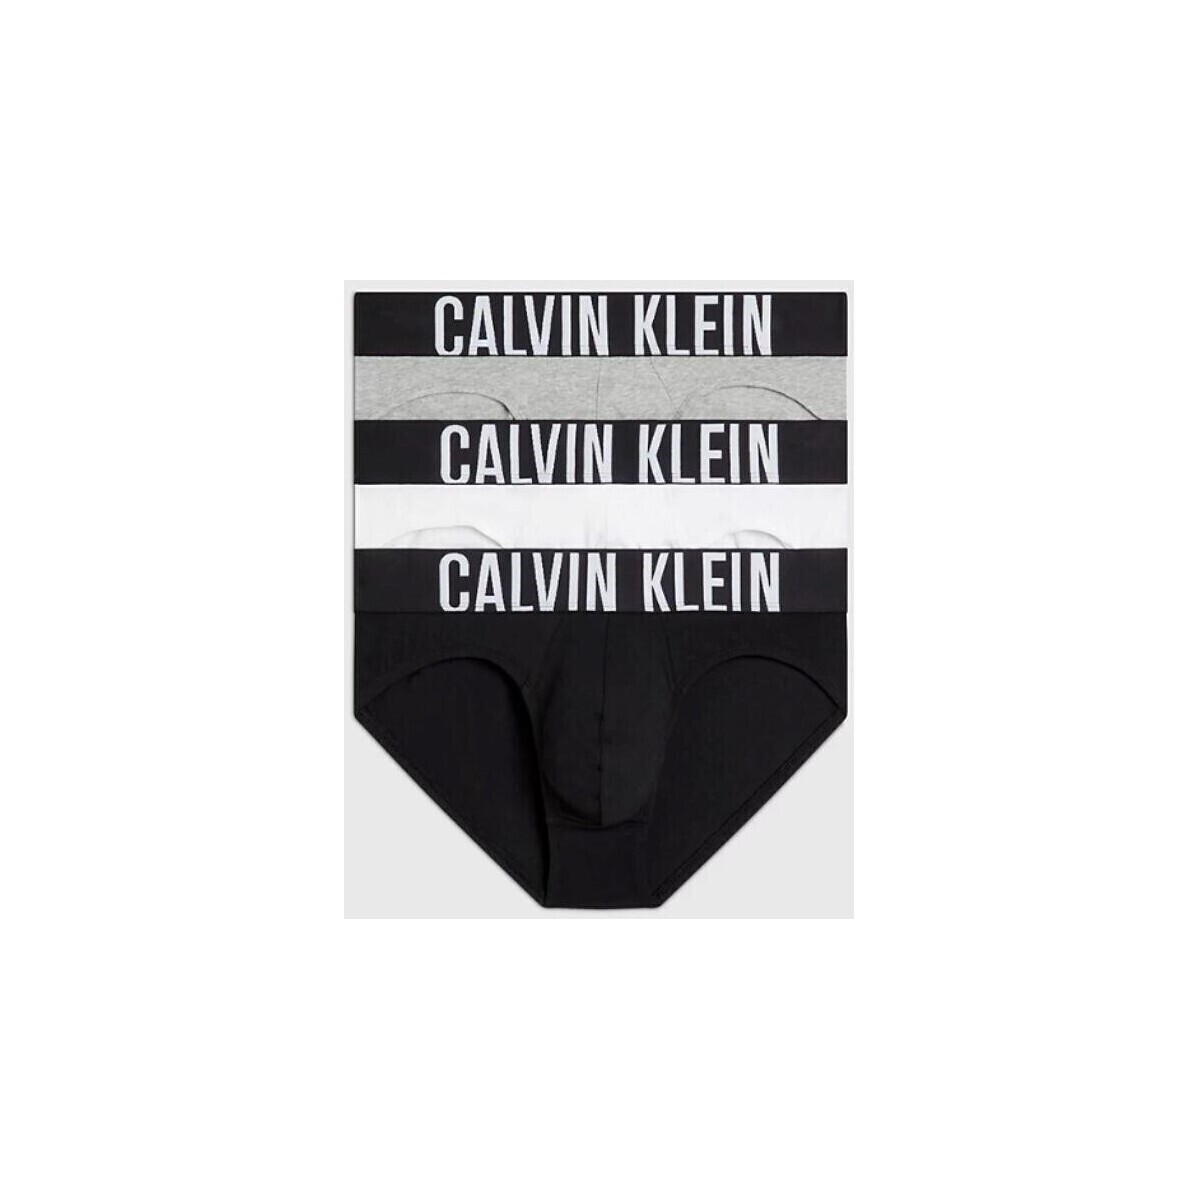 Spodní prádlo Muži Trenýrky Calvin Klein Jeans 000NB3607AMP1 HIP BRIEF 3PK           